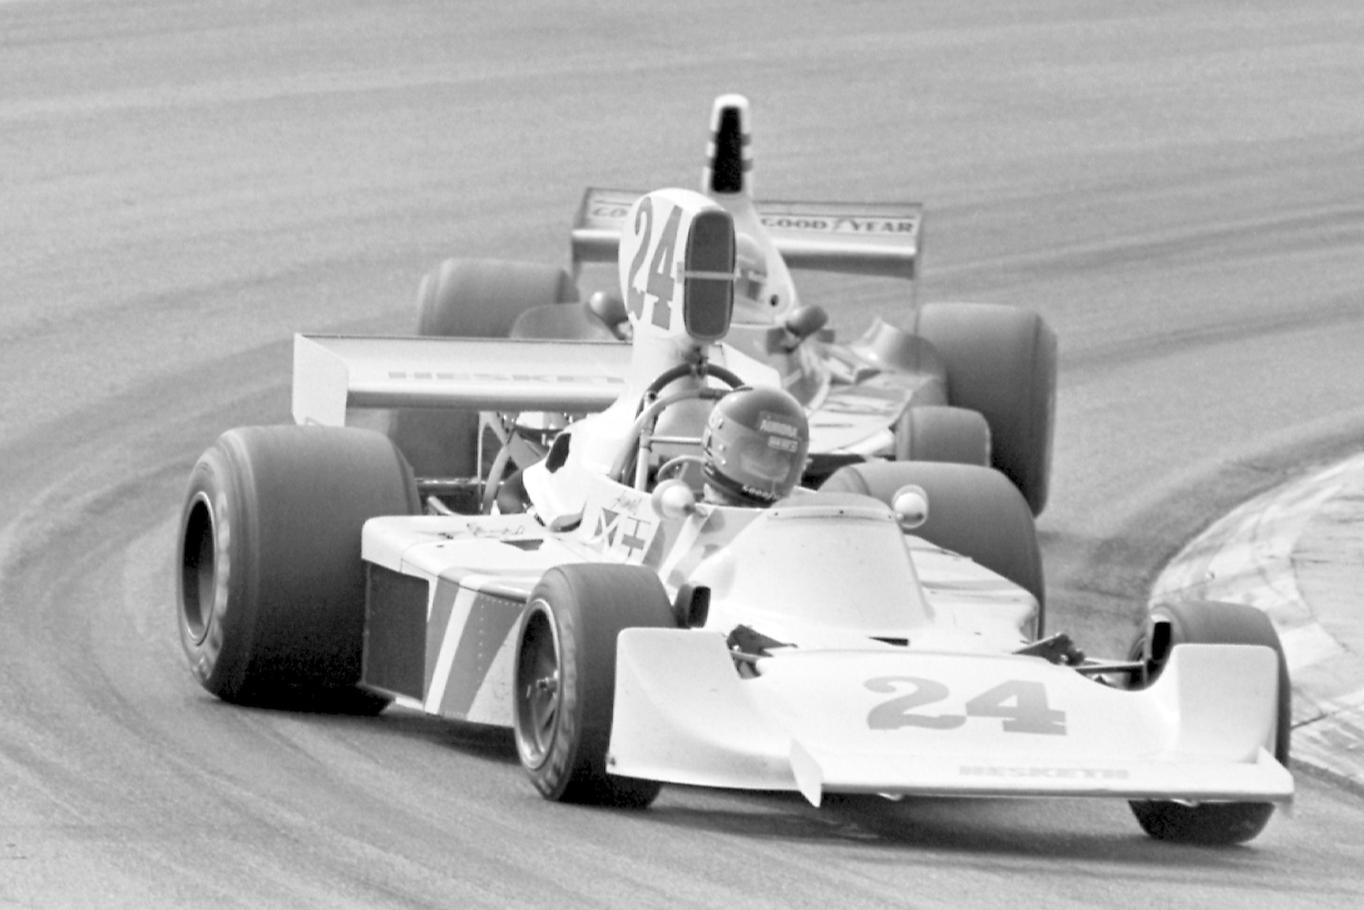 James Hunt, Hesketh, followed by Niki Lauda in a Ferrari.